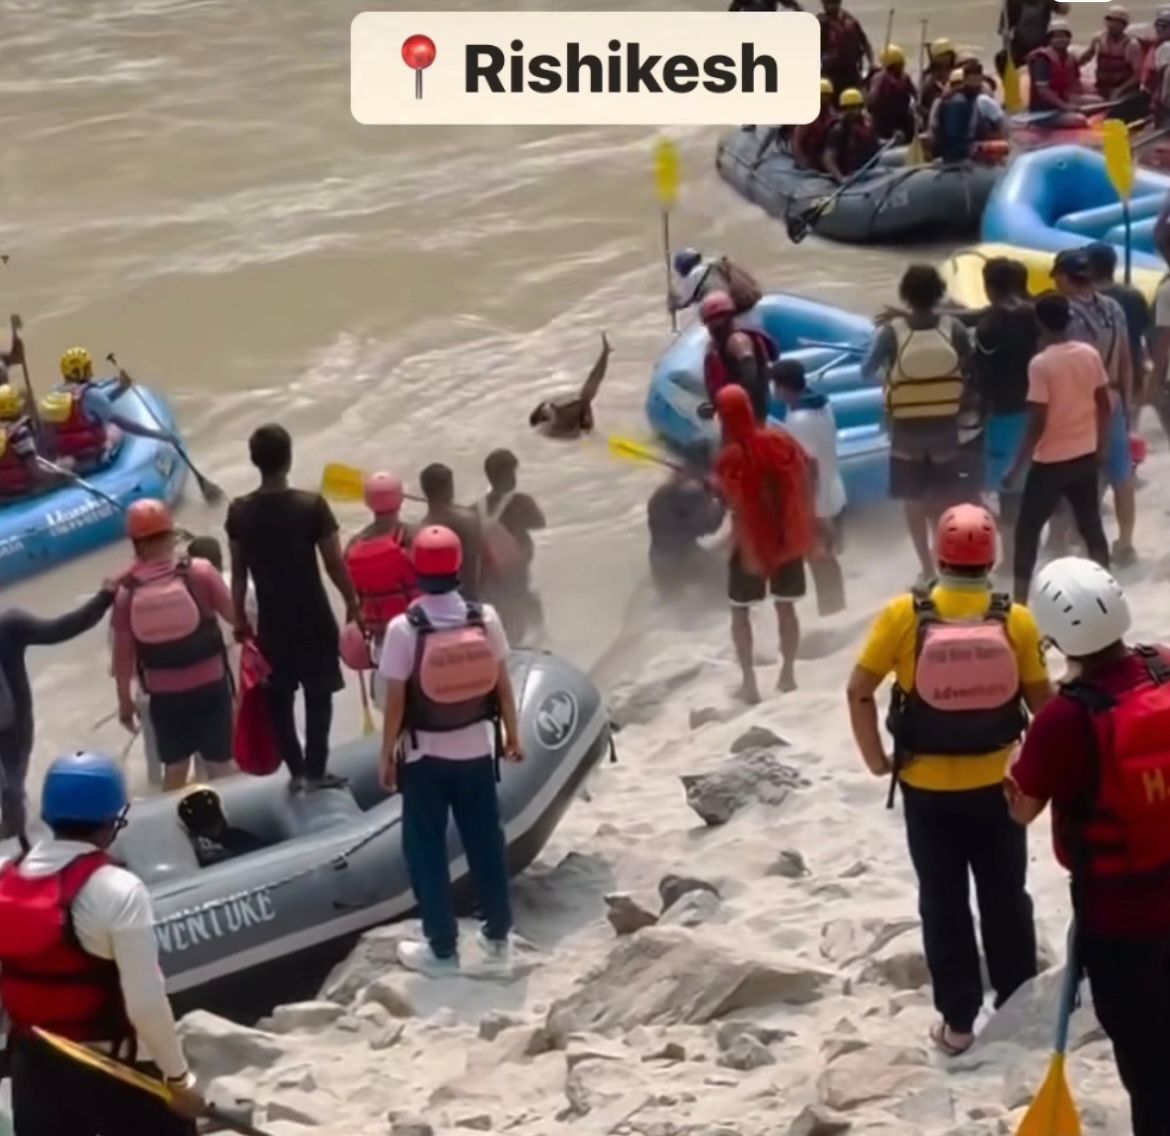 Rishikesh River Rafting: रिवर राफ्टिंग कर रहे यात्रियों के साथ मारपीट